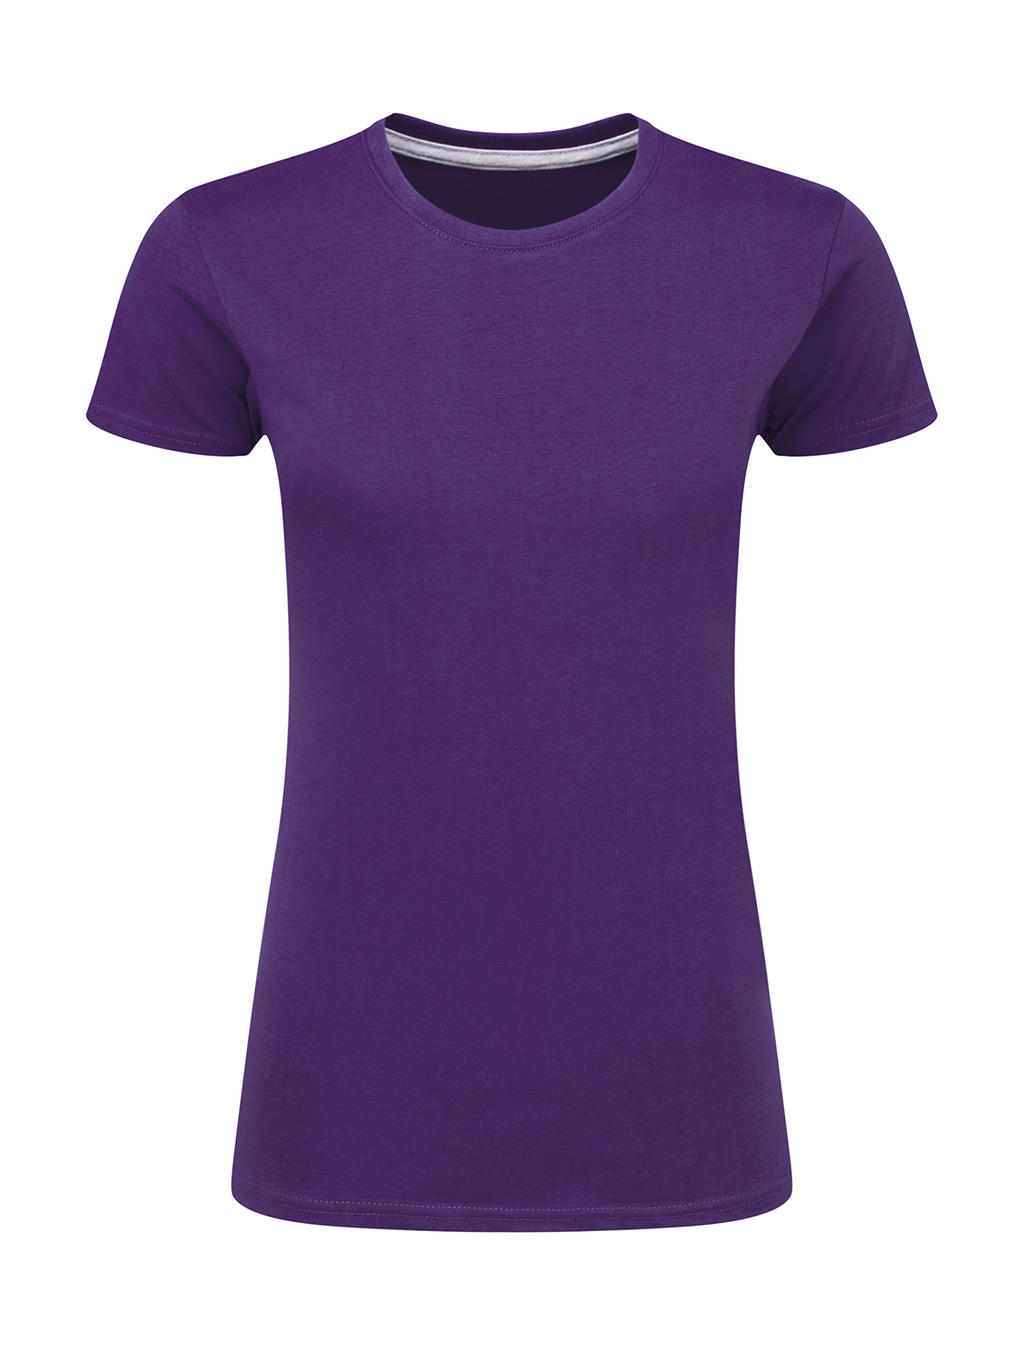 Dokonale potlačiteľné dámske tričko bez štítku - purple